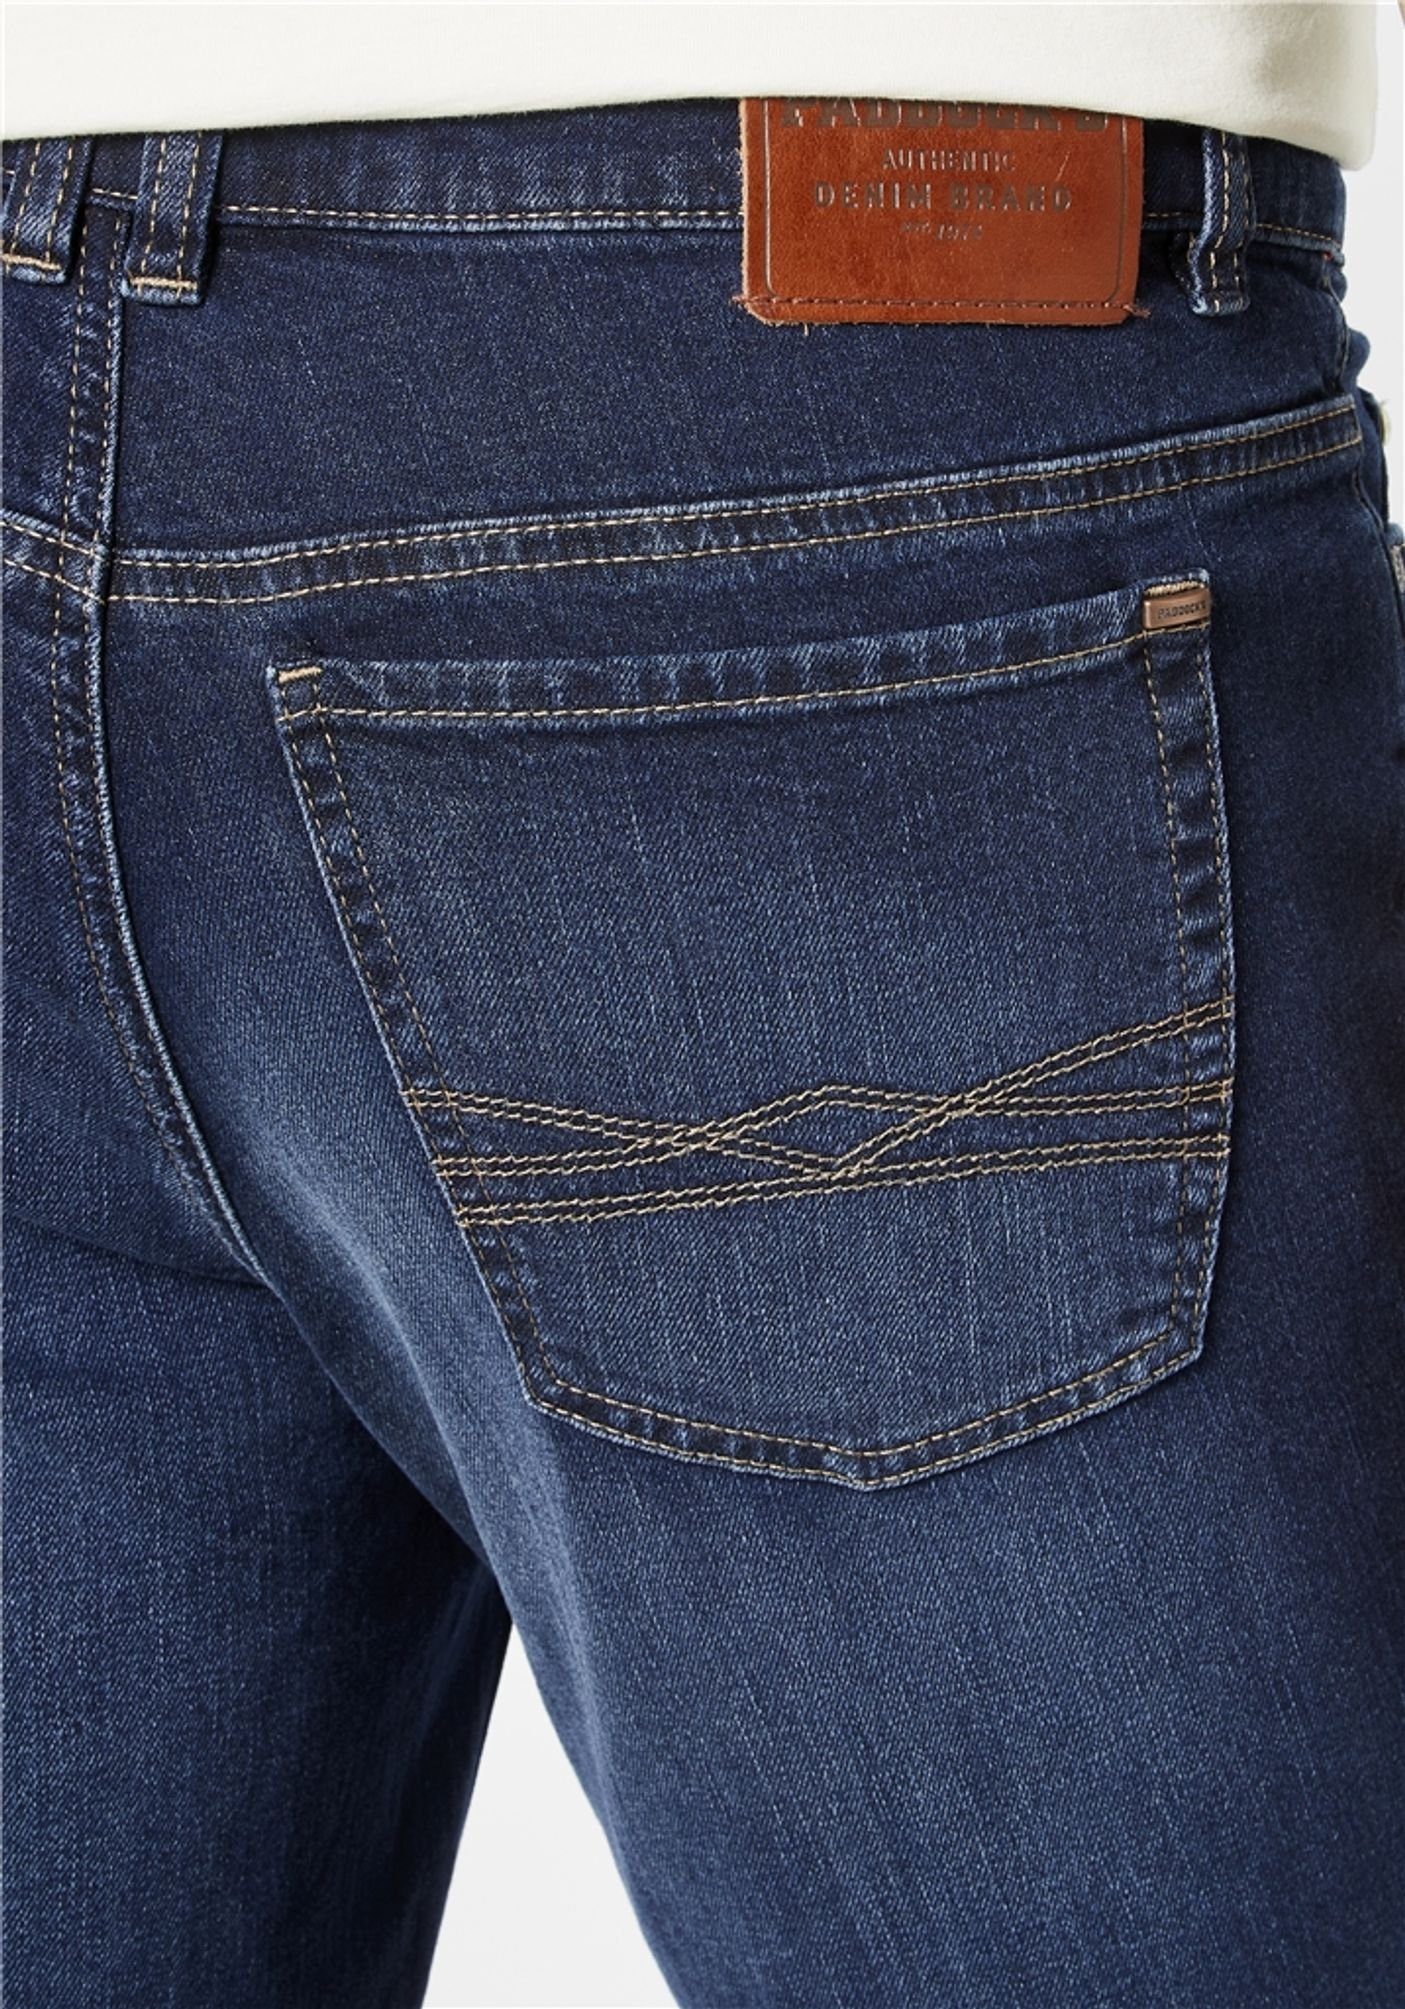 PIPE dark stone (4310) 5-Pocket-Jeans RANGER Paddock's used